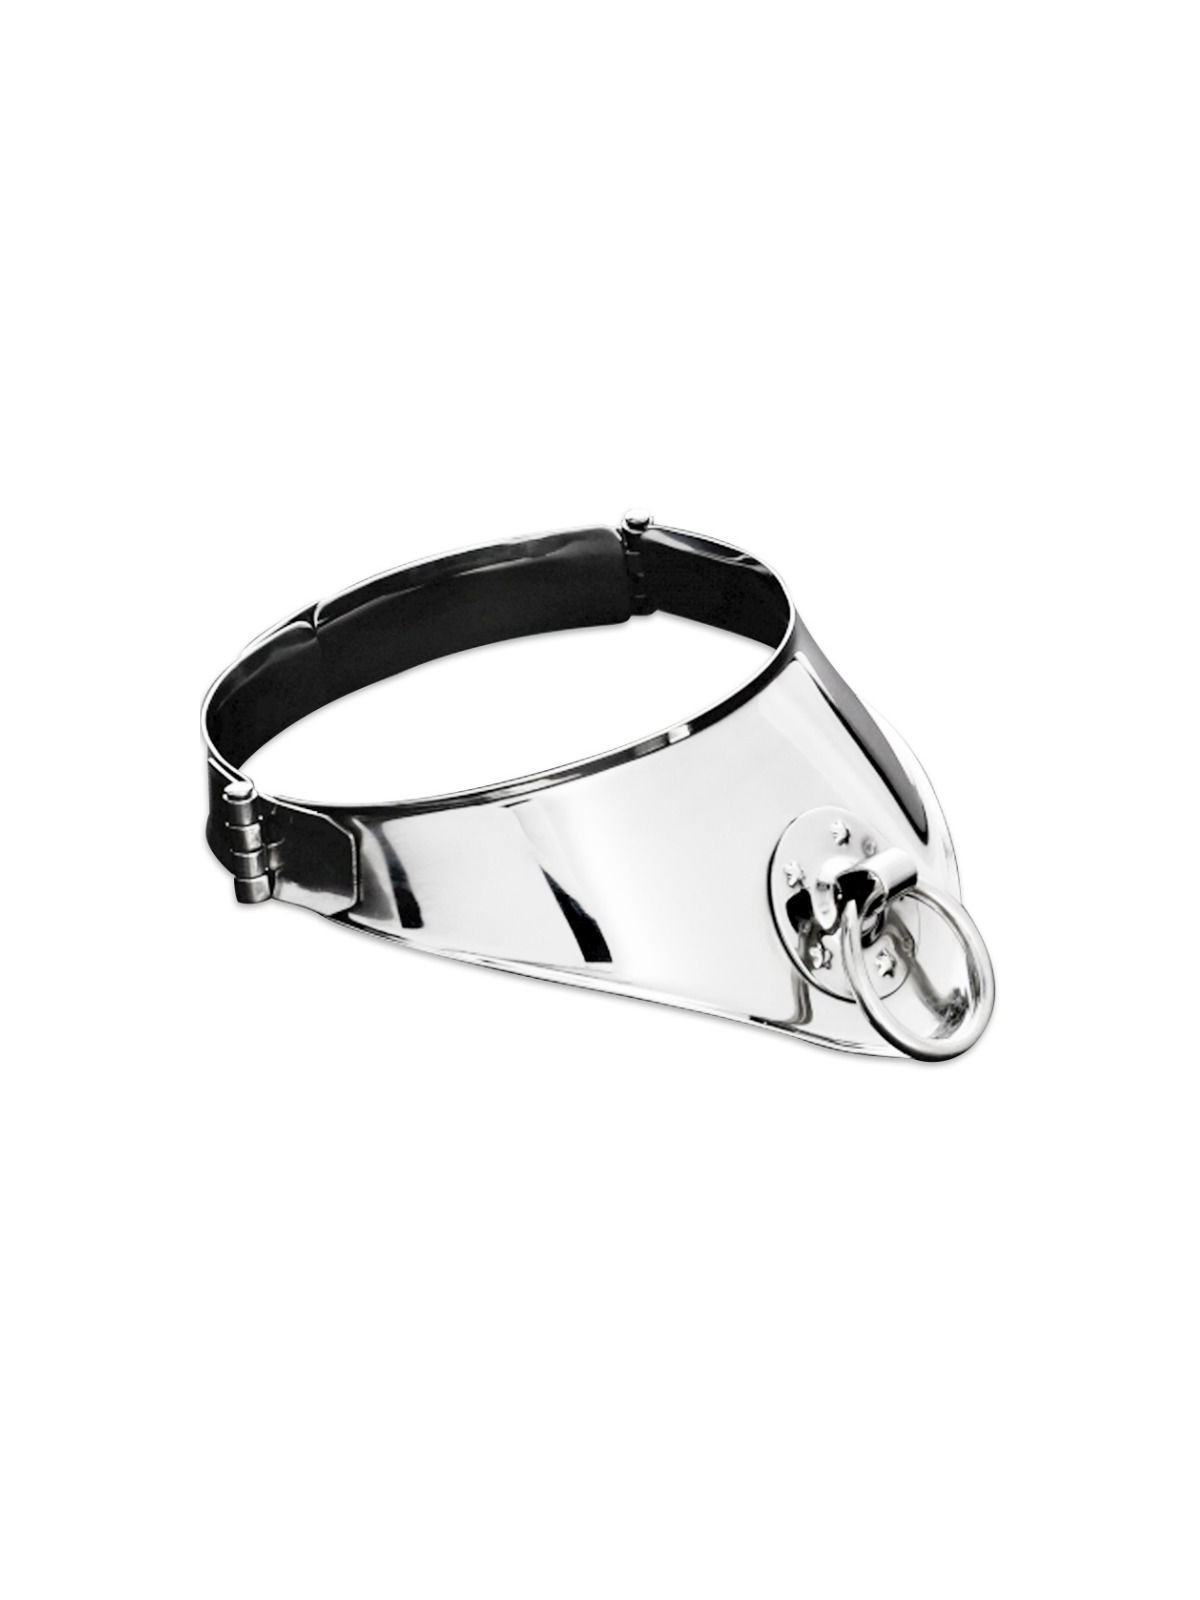 Metal Hard Collar Restricción Con Anilla & Candado 12.5 cm - Comprar Collar BDSM Metal Hard - Collares BDSM (1)